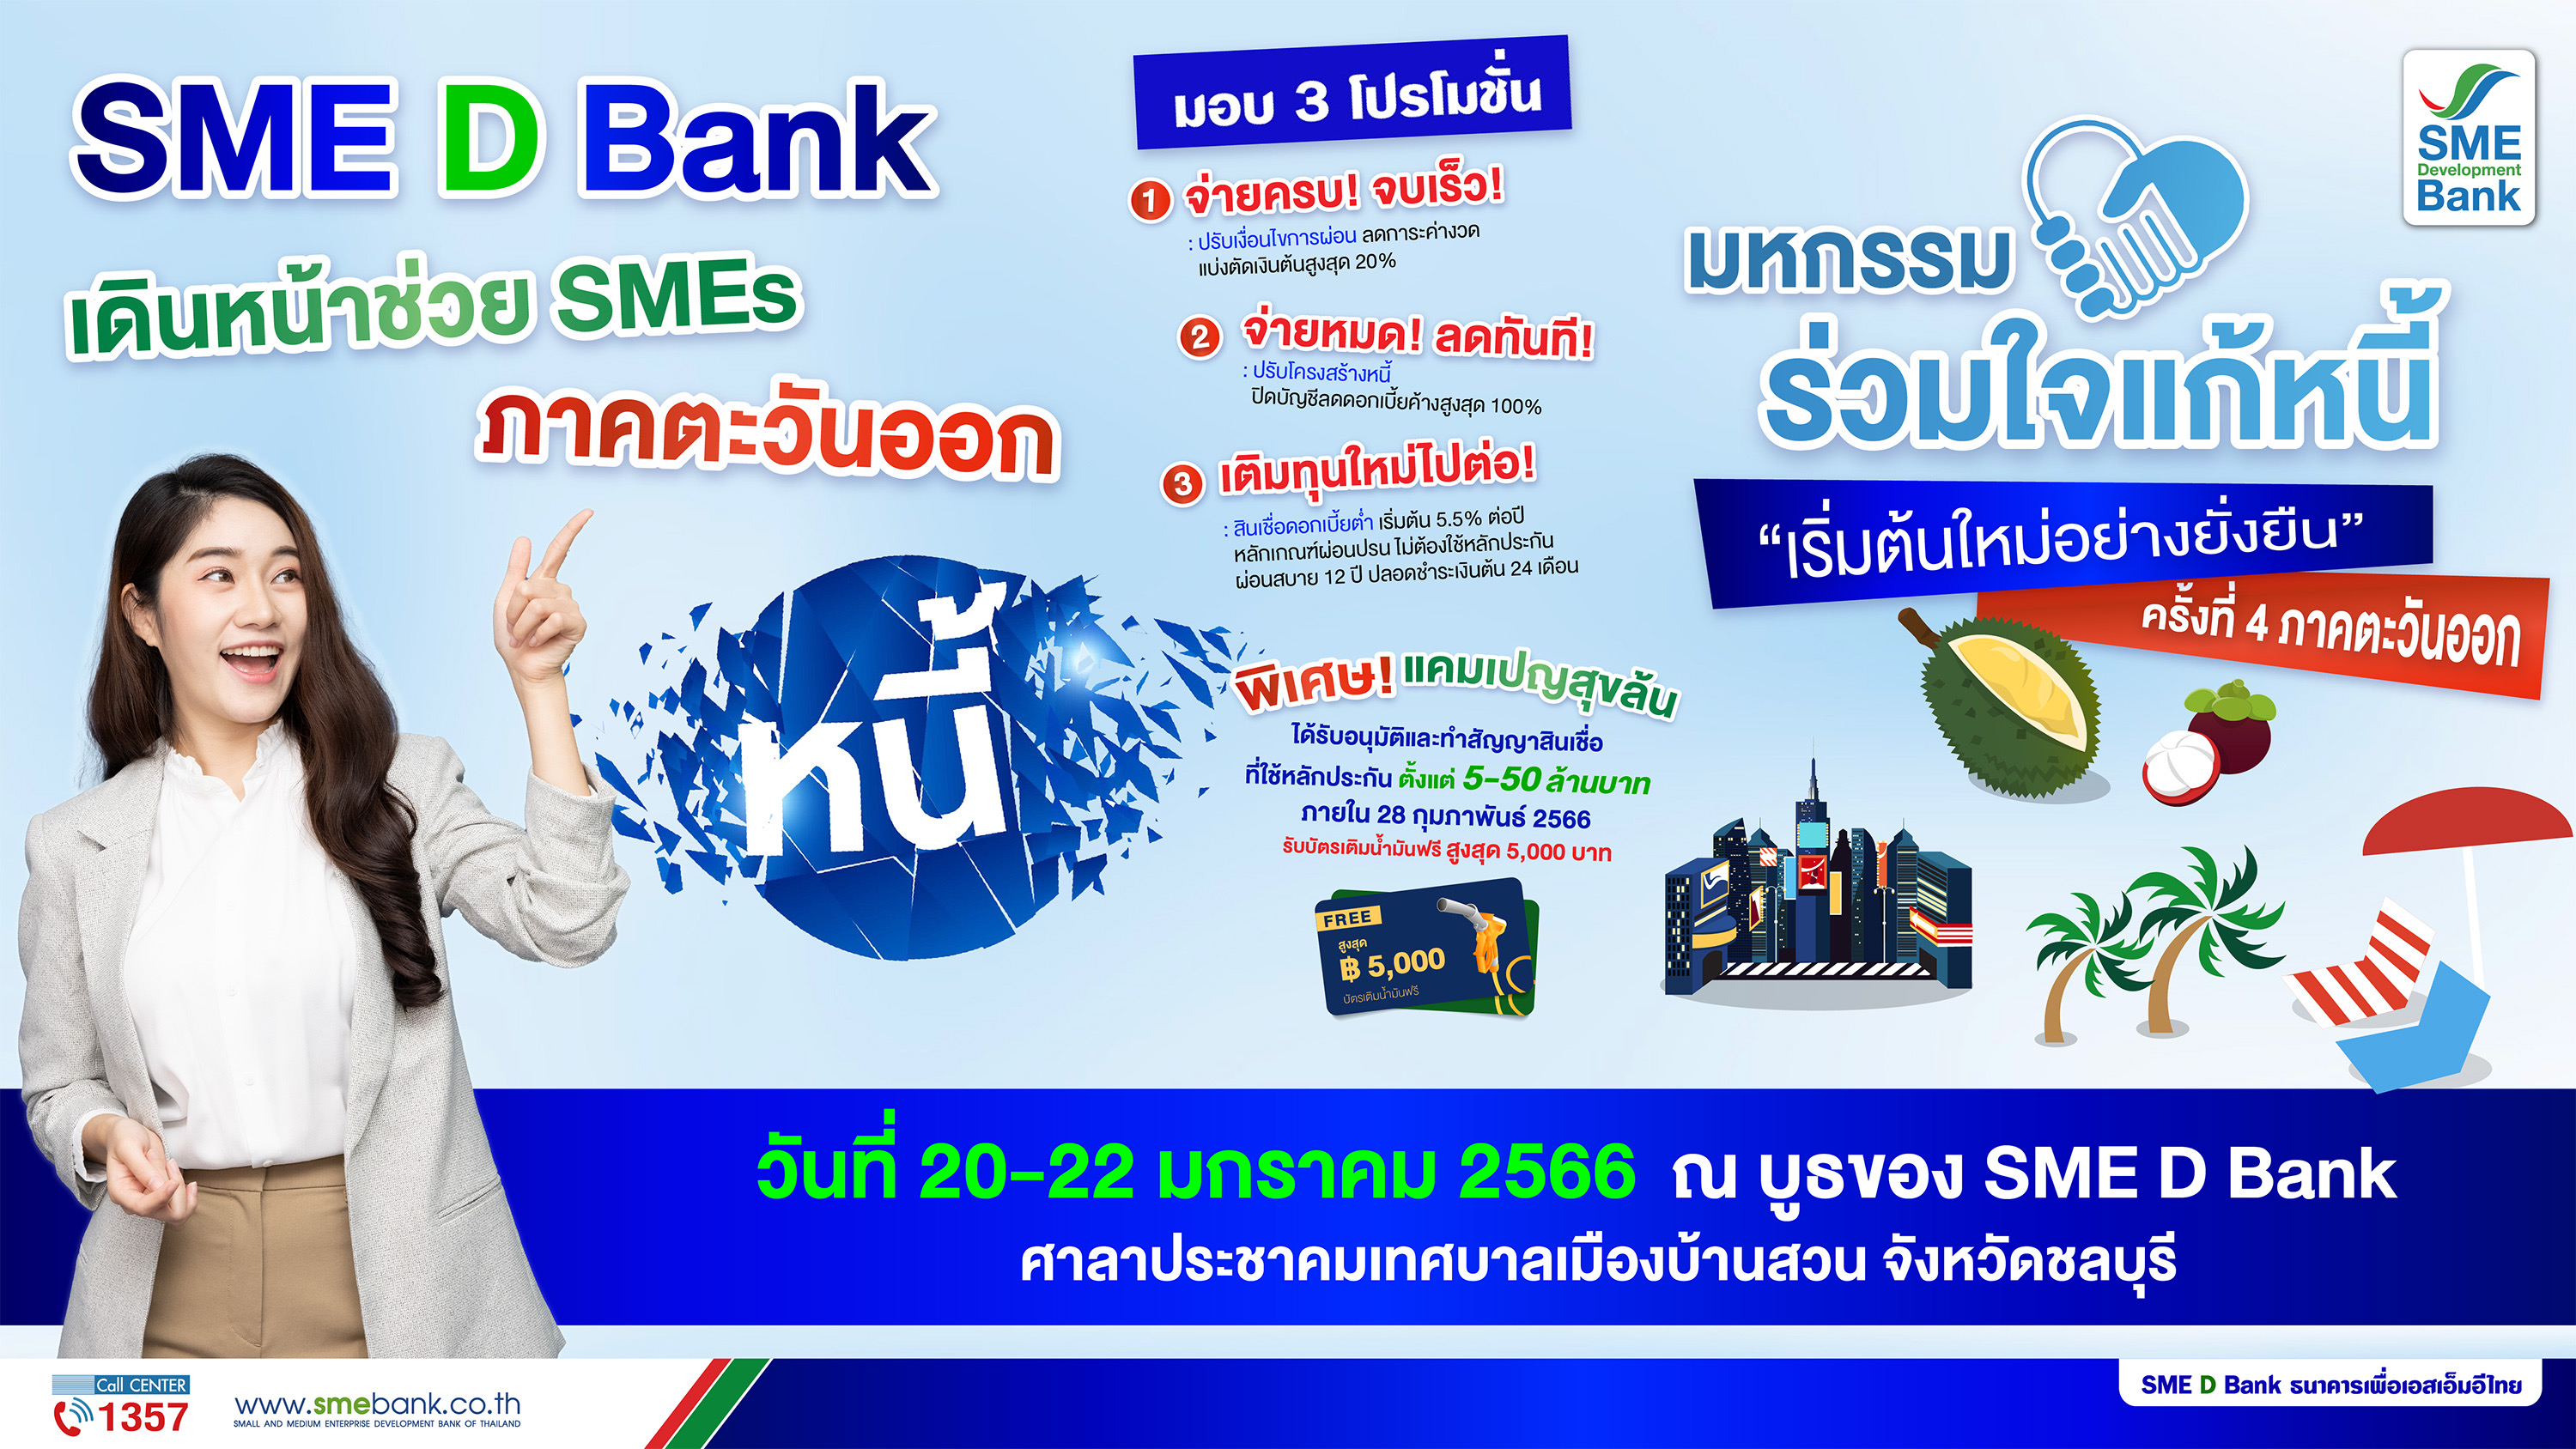 SME D Bank ร่วมงาน ‘มหกรรมร่วมใจแก้หนี้ฯ’ ครั้งที่ 4 จ.ชลบุรี